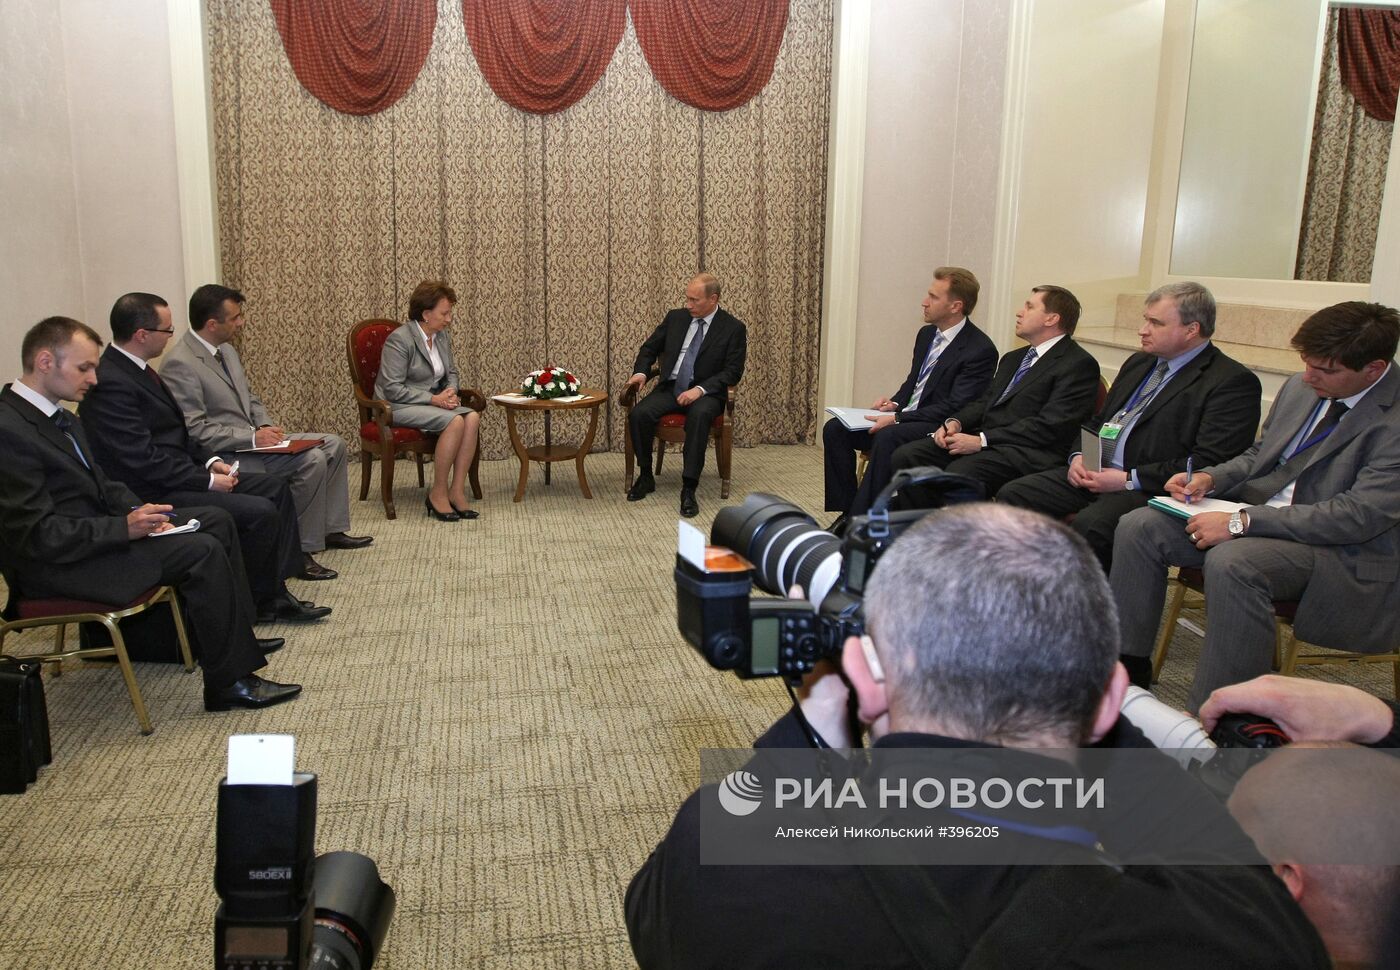 Встреча В. Путина с З. Гречаной